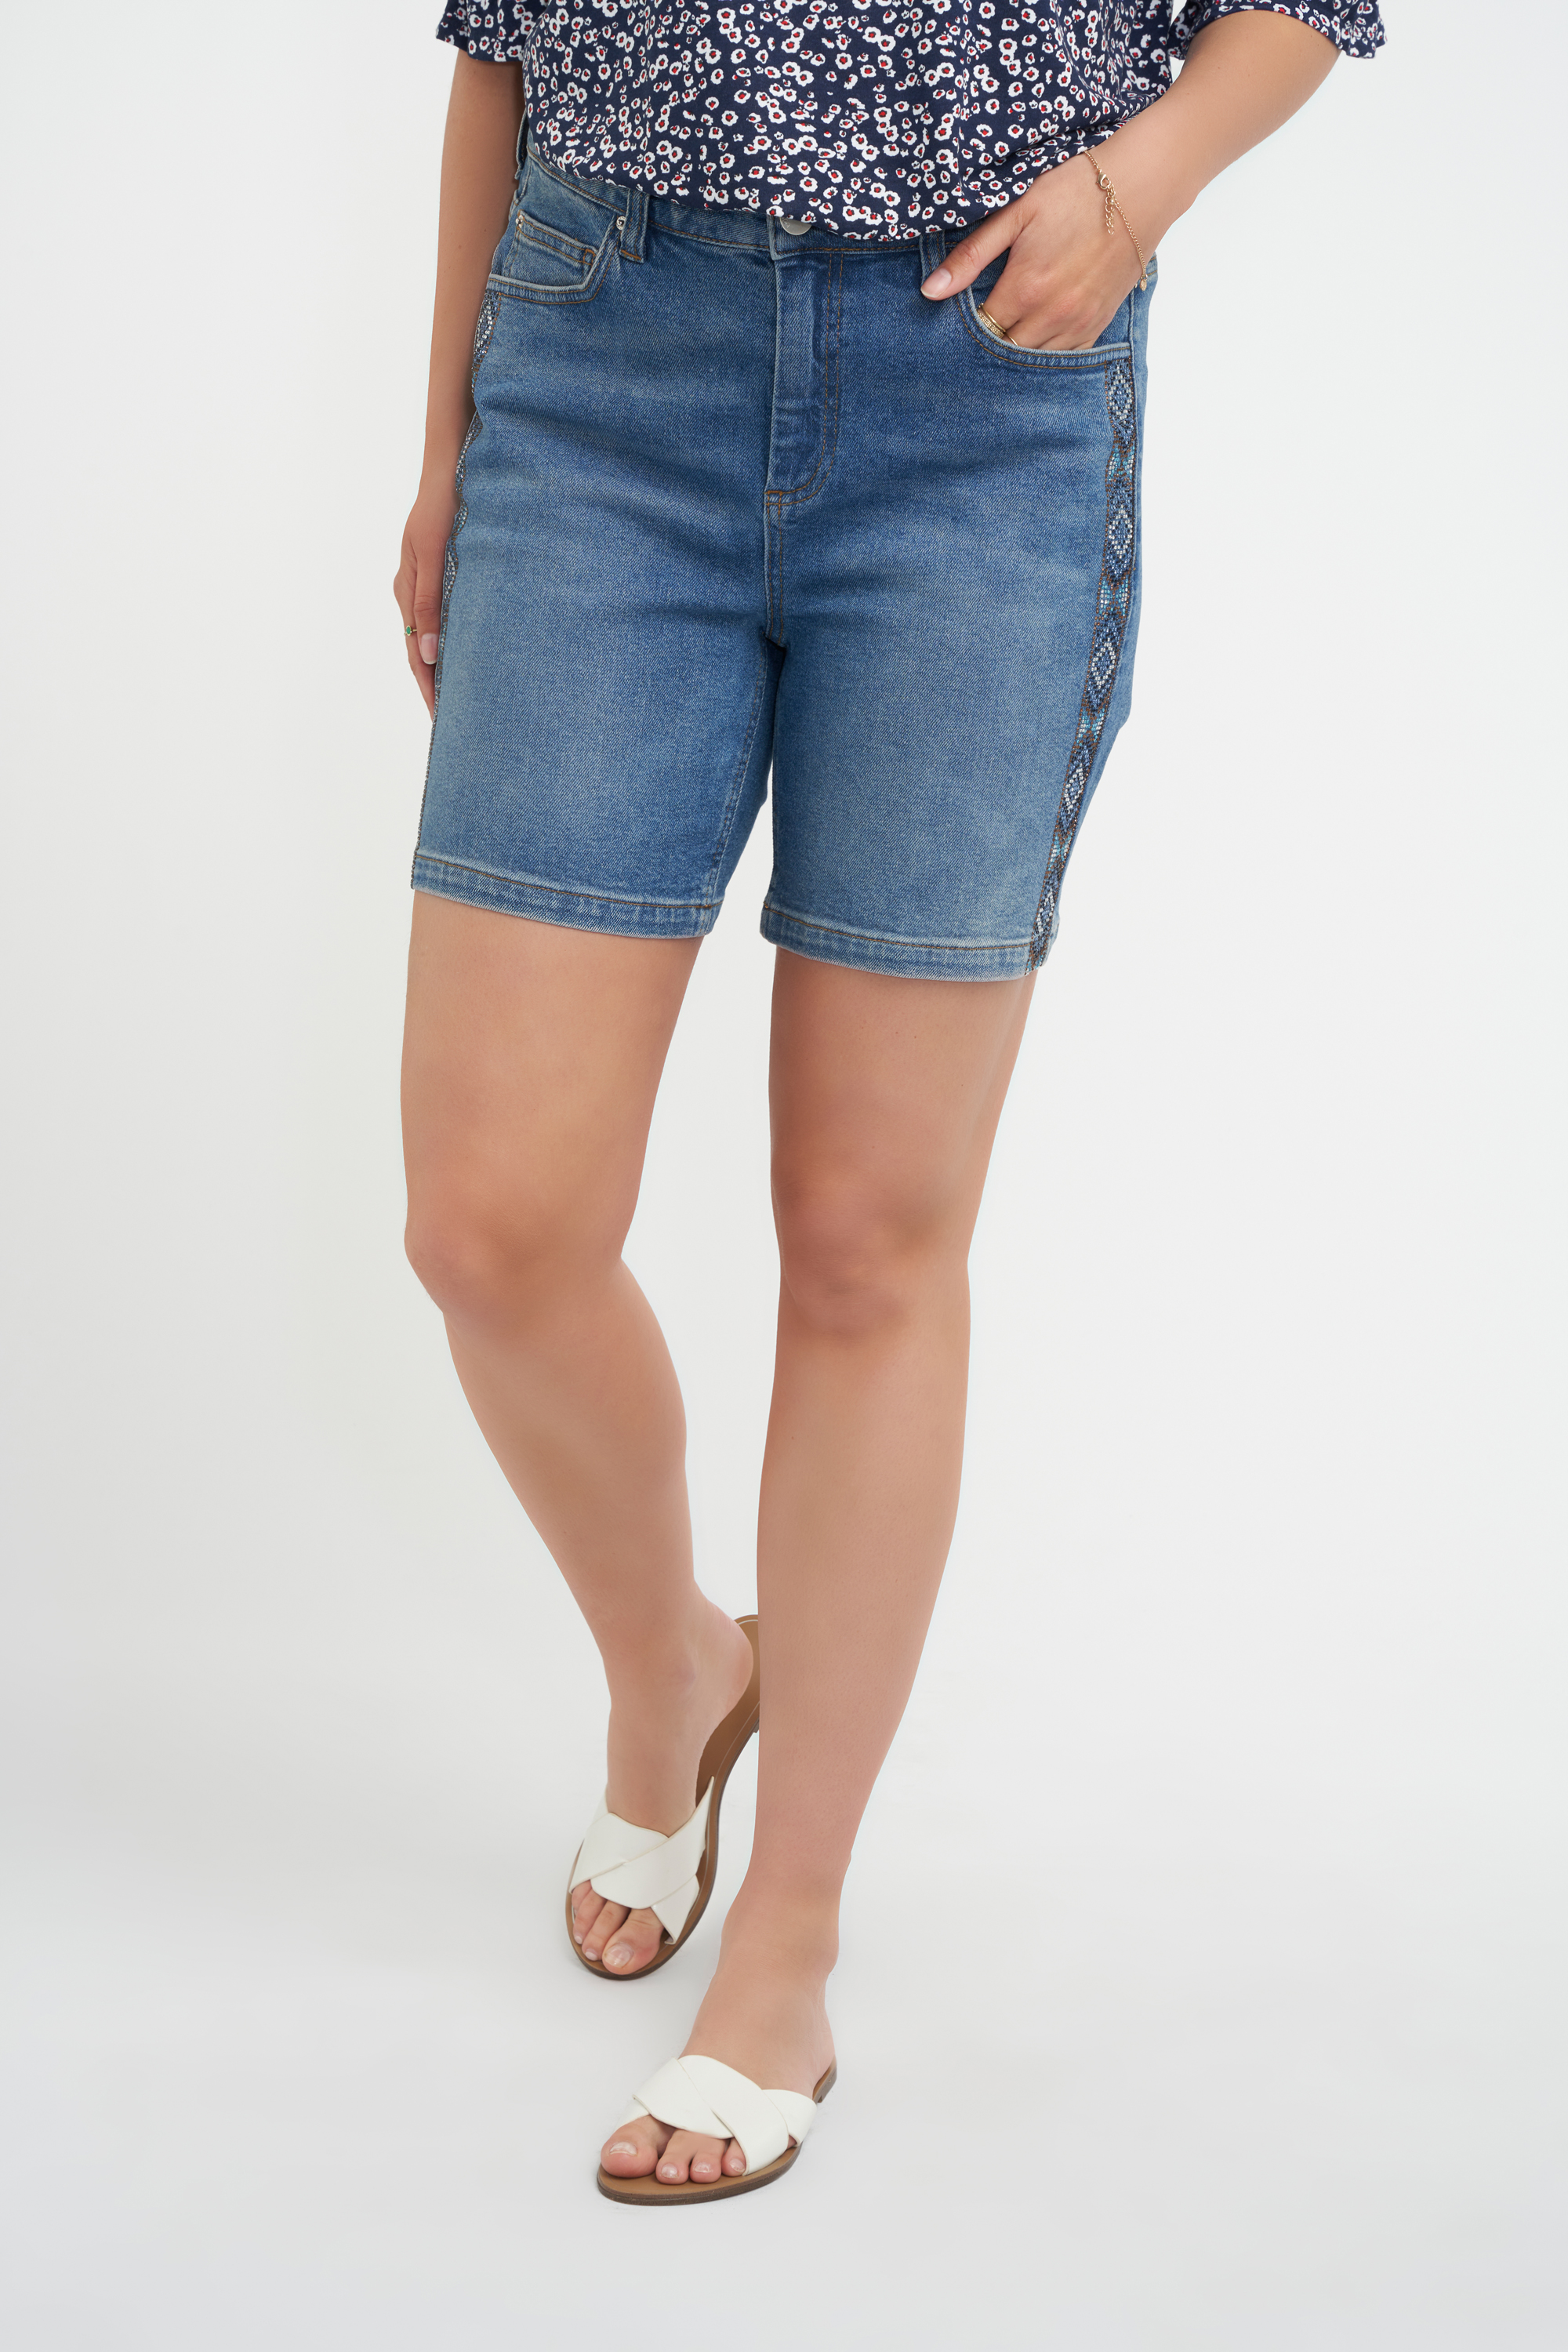 Jeans-Shorts mit Strasssteinen  image number null